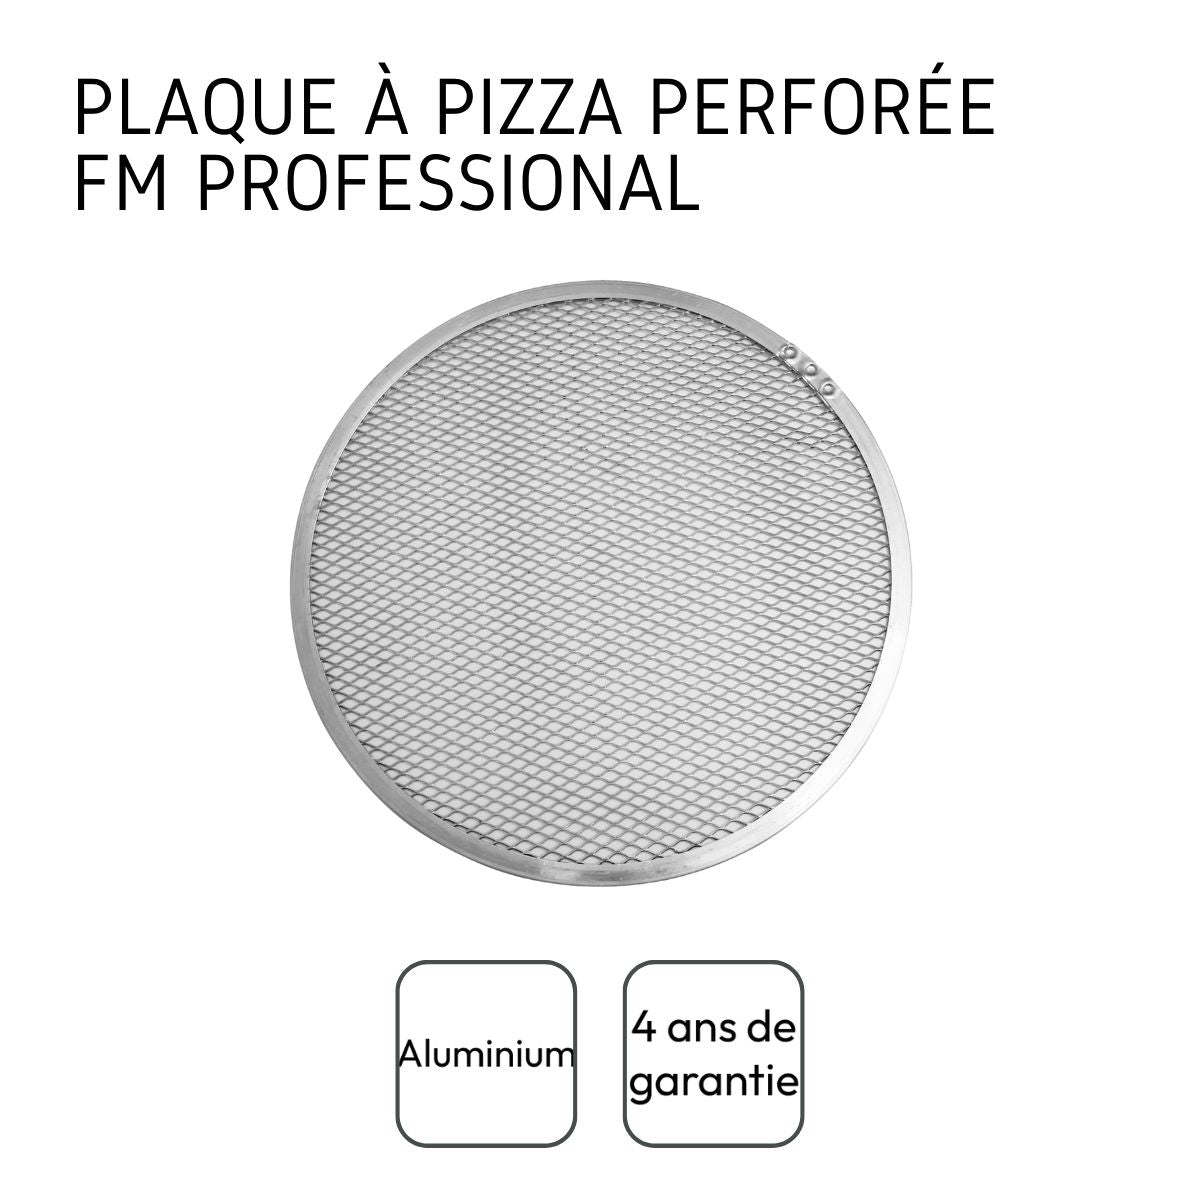 Plaque à pizza perforée